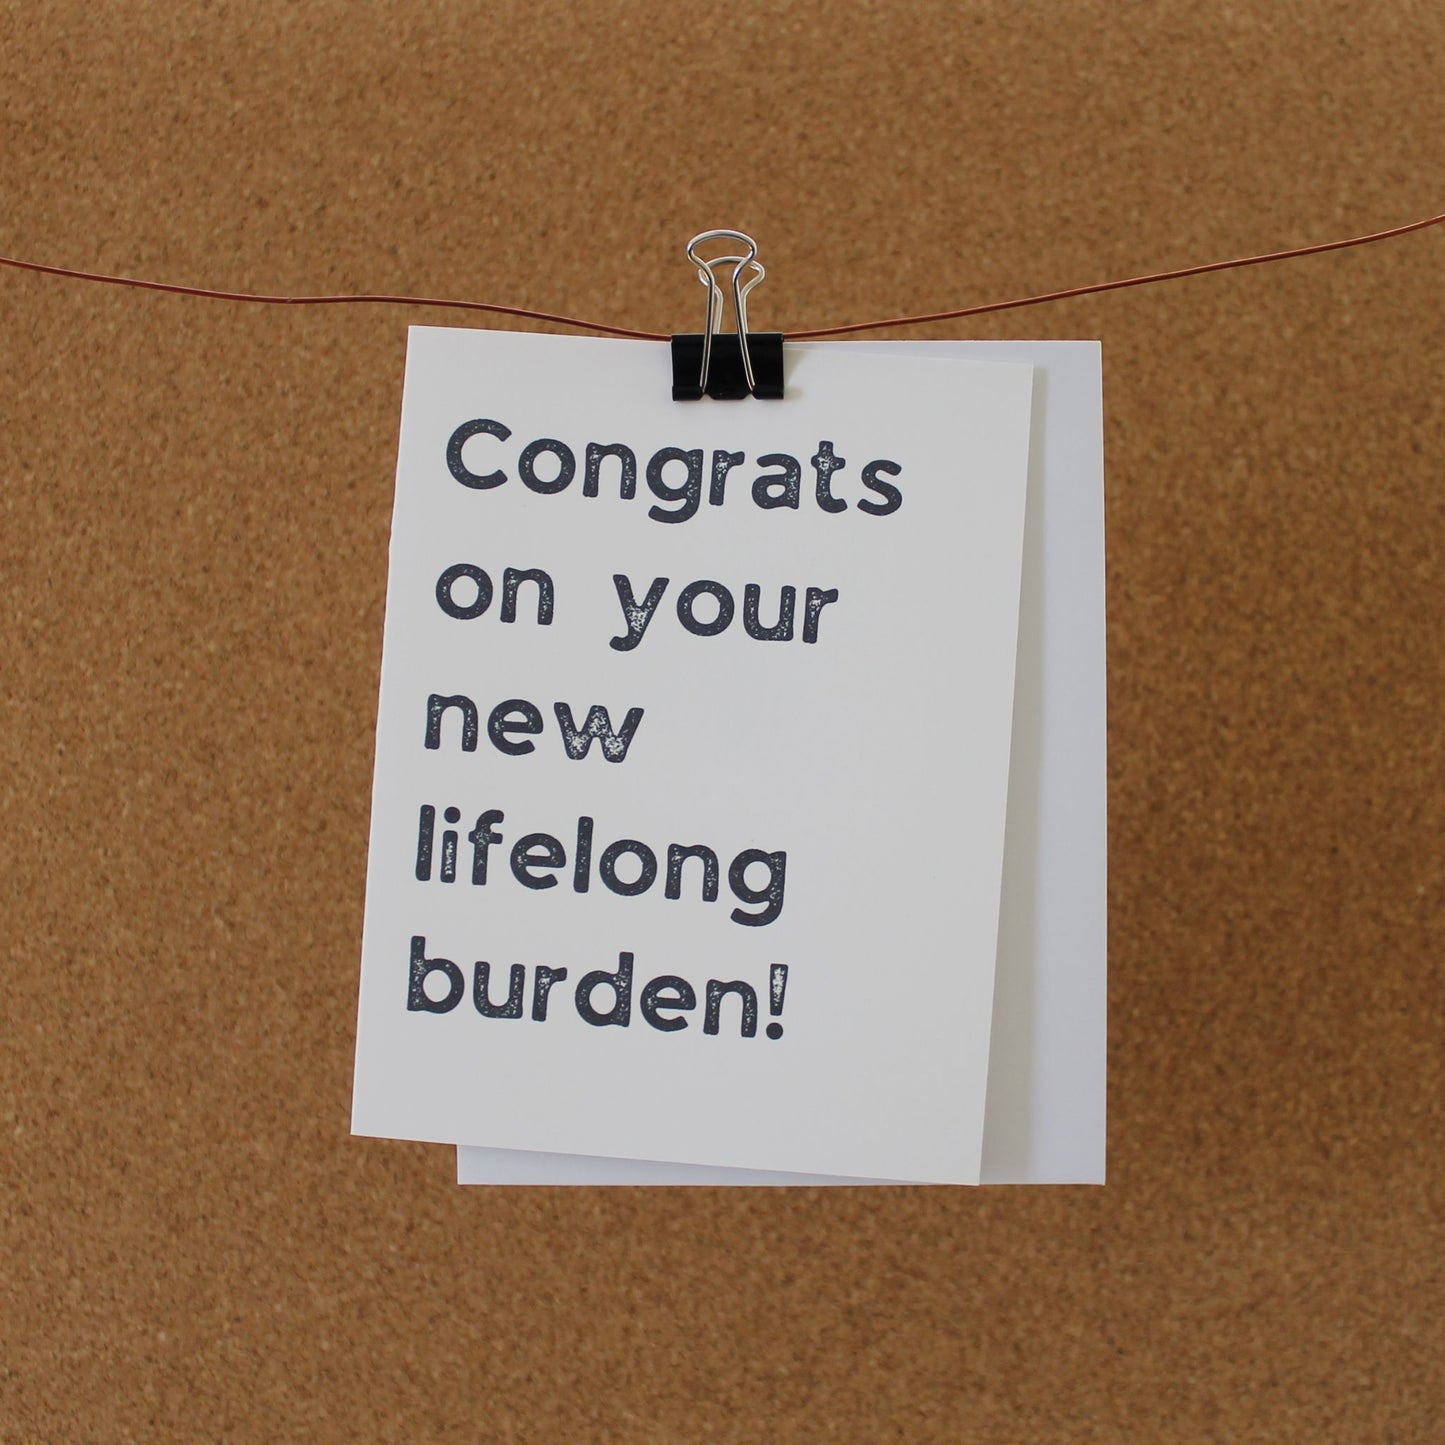 Funny Baby Card: "Congrats on your new lifelong burden."